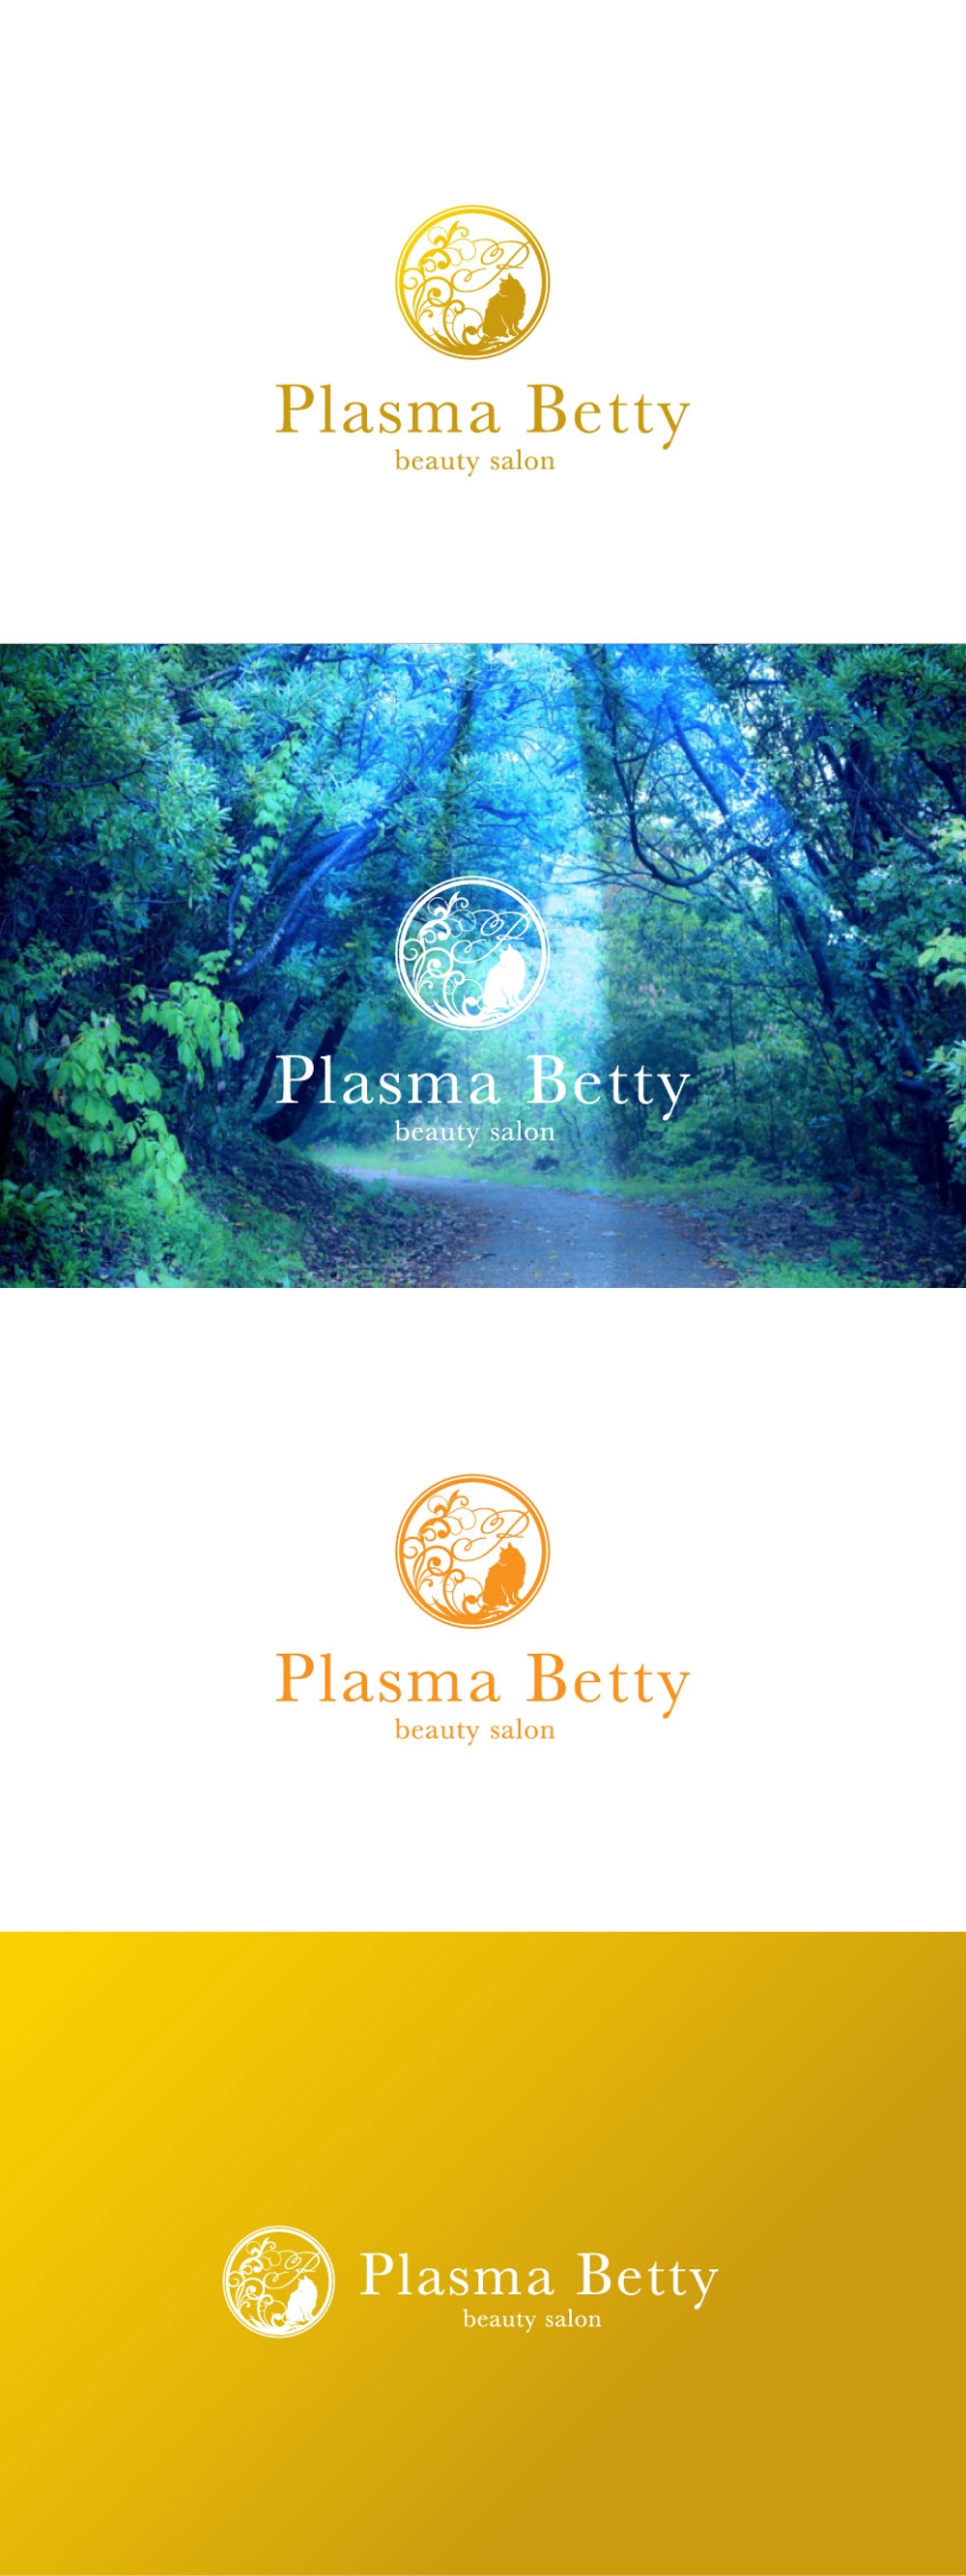 新規オープンするエステサロン「Plasma Betty」のロゴ作成